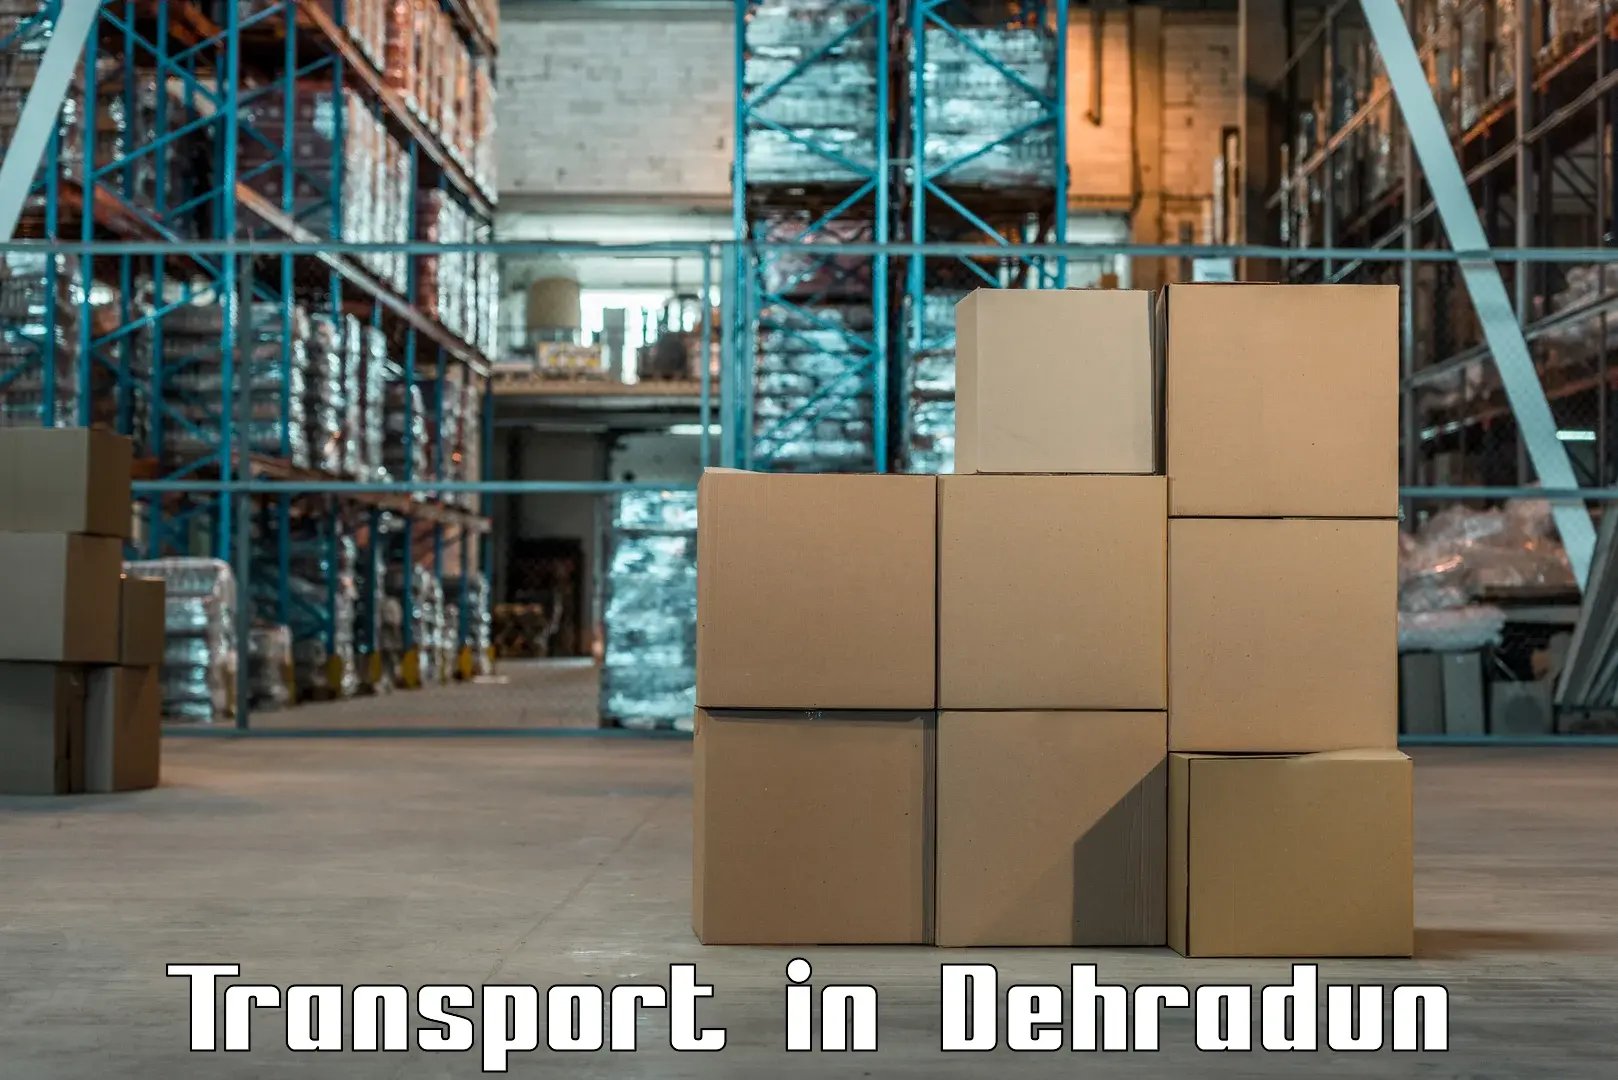 Container transport service in Dehradun